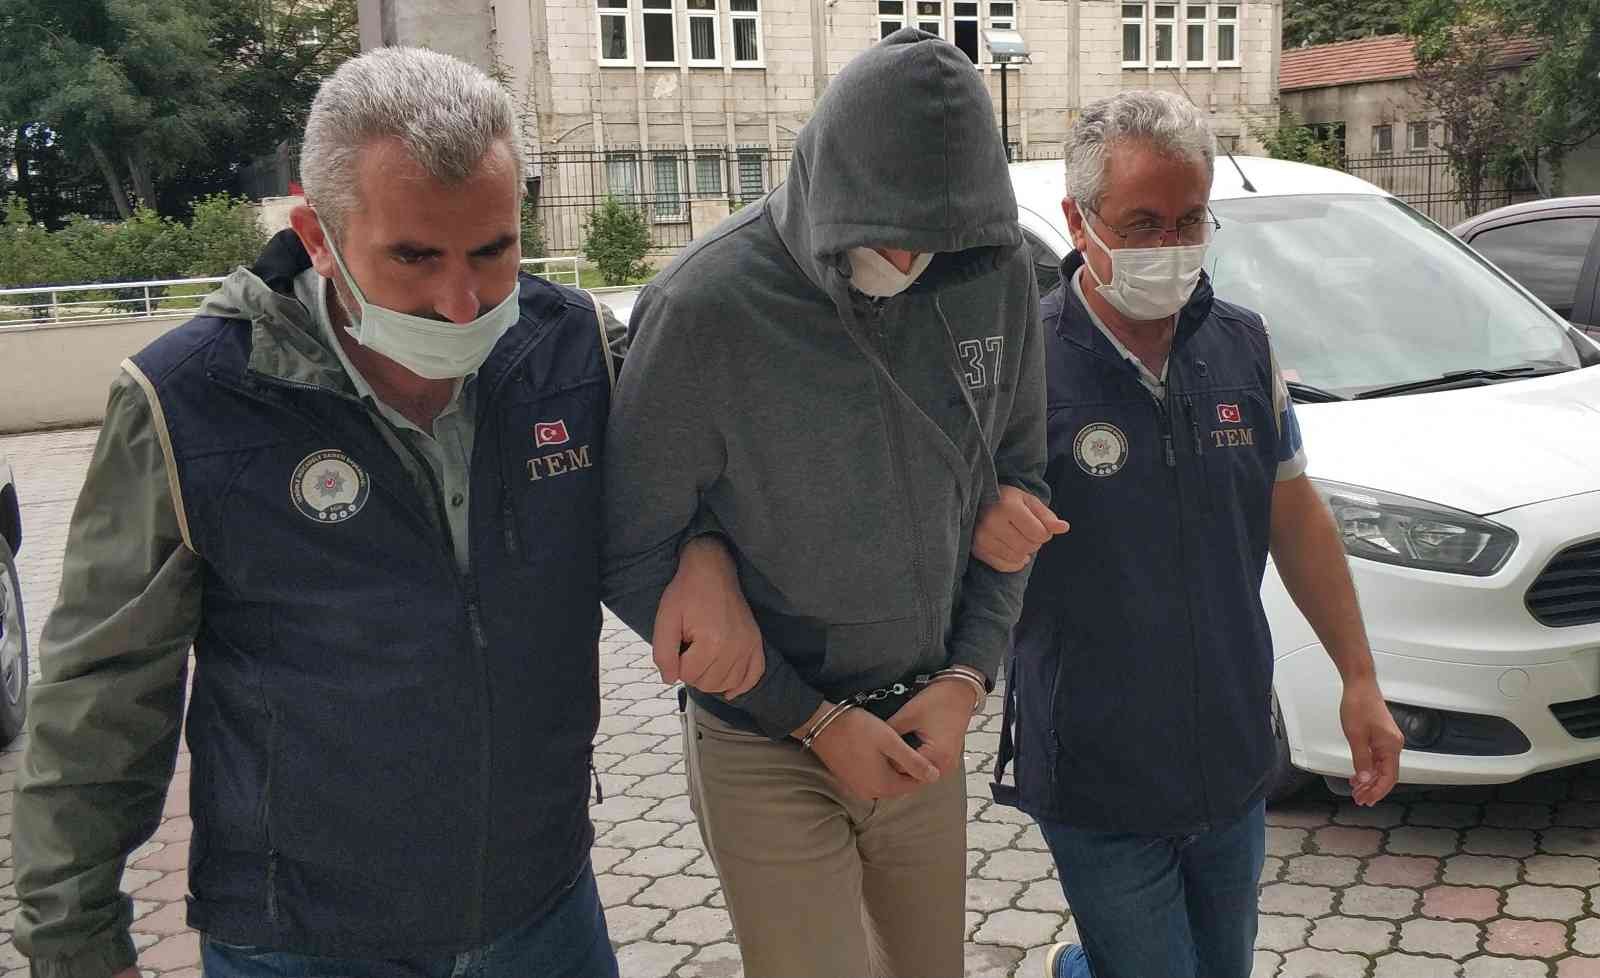 FETÖ operasyonunda 6 şüpheliden 2’si tutuklandı #denizli